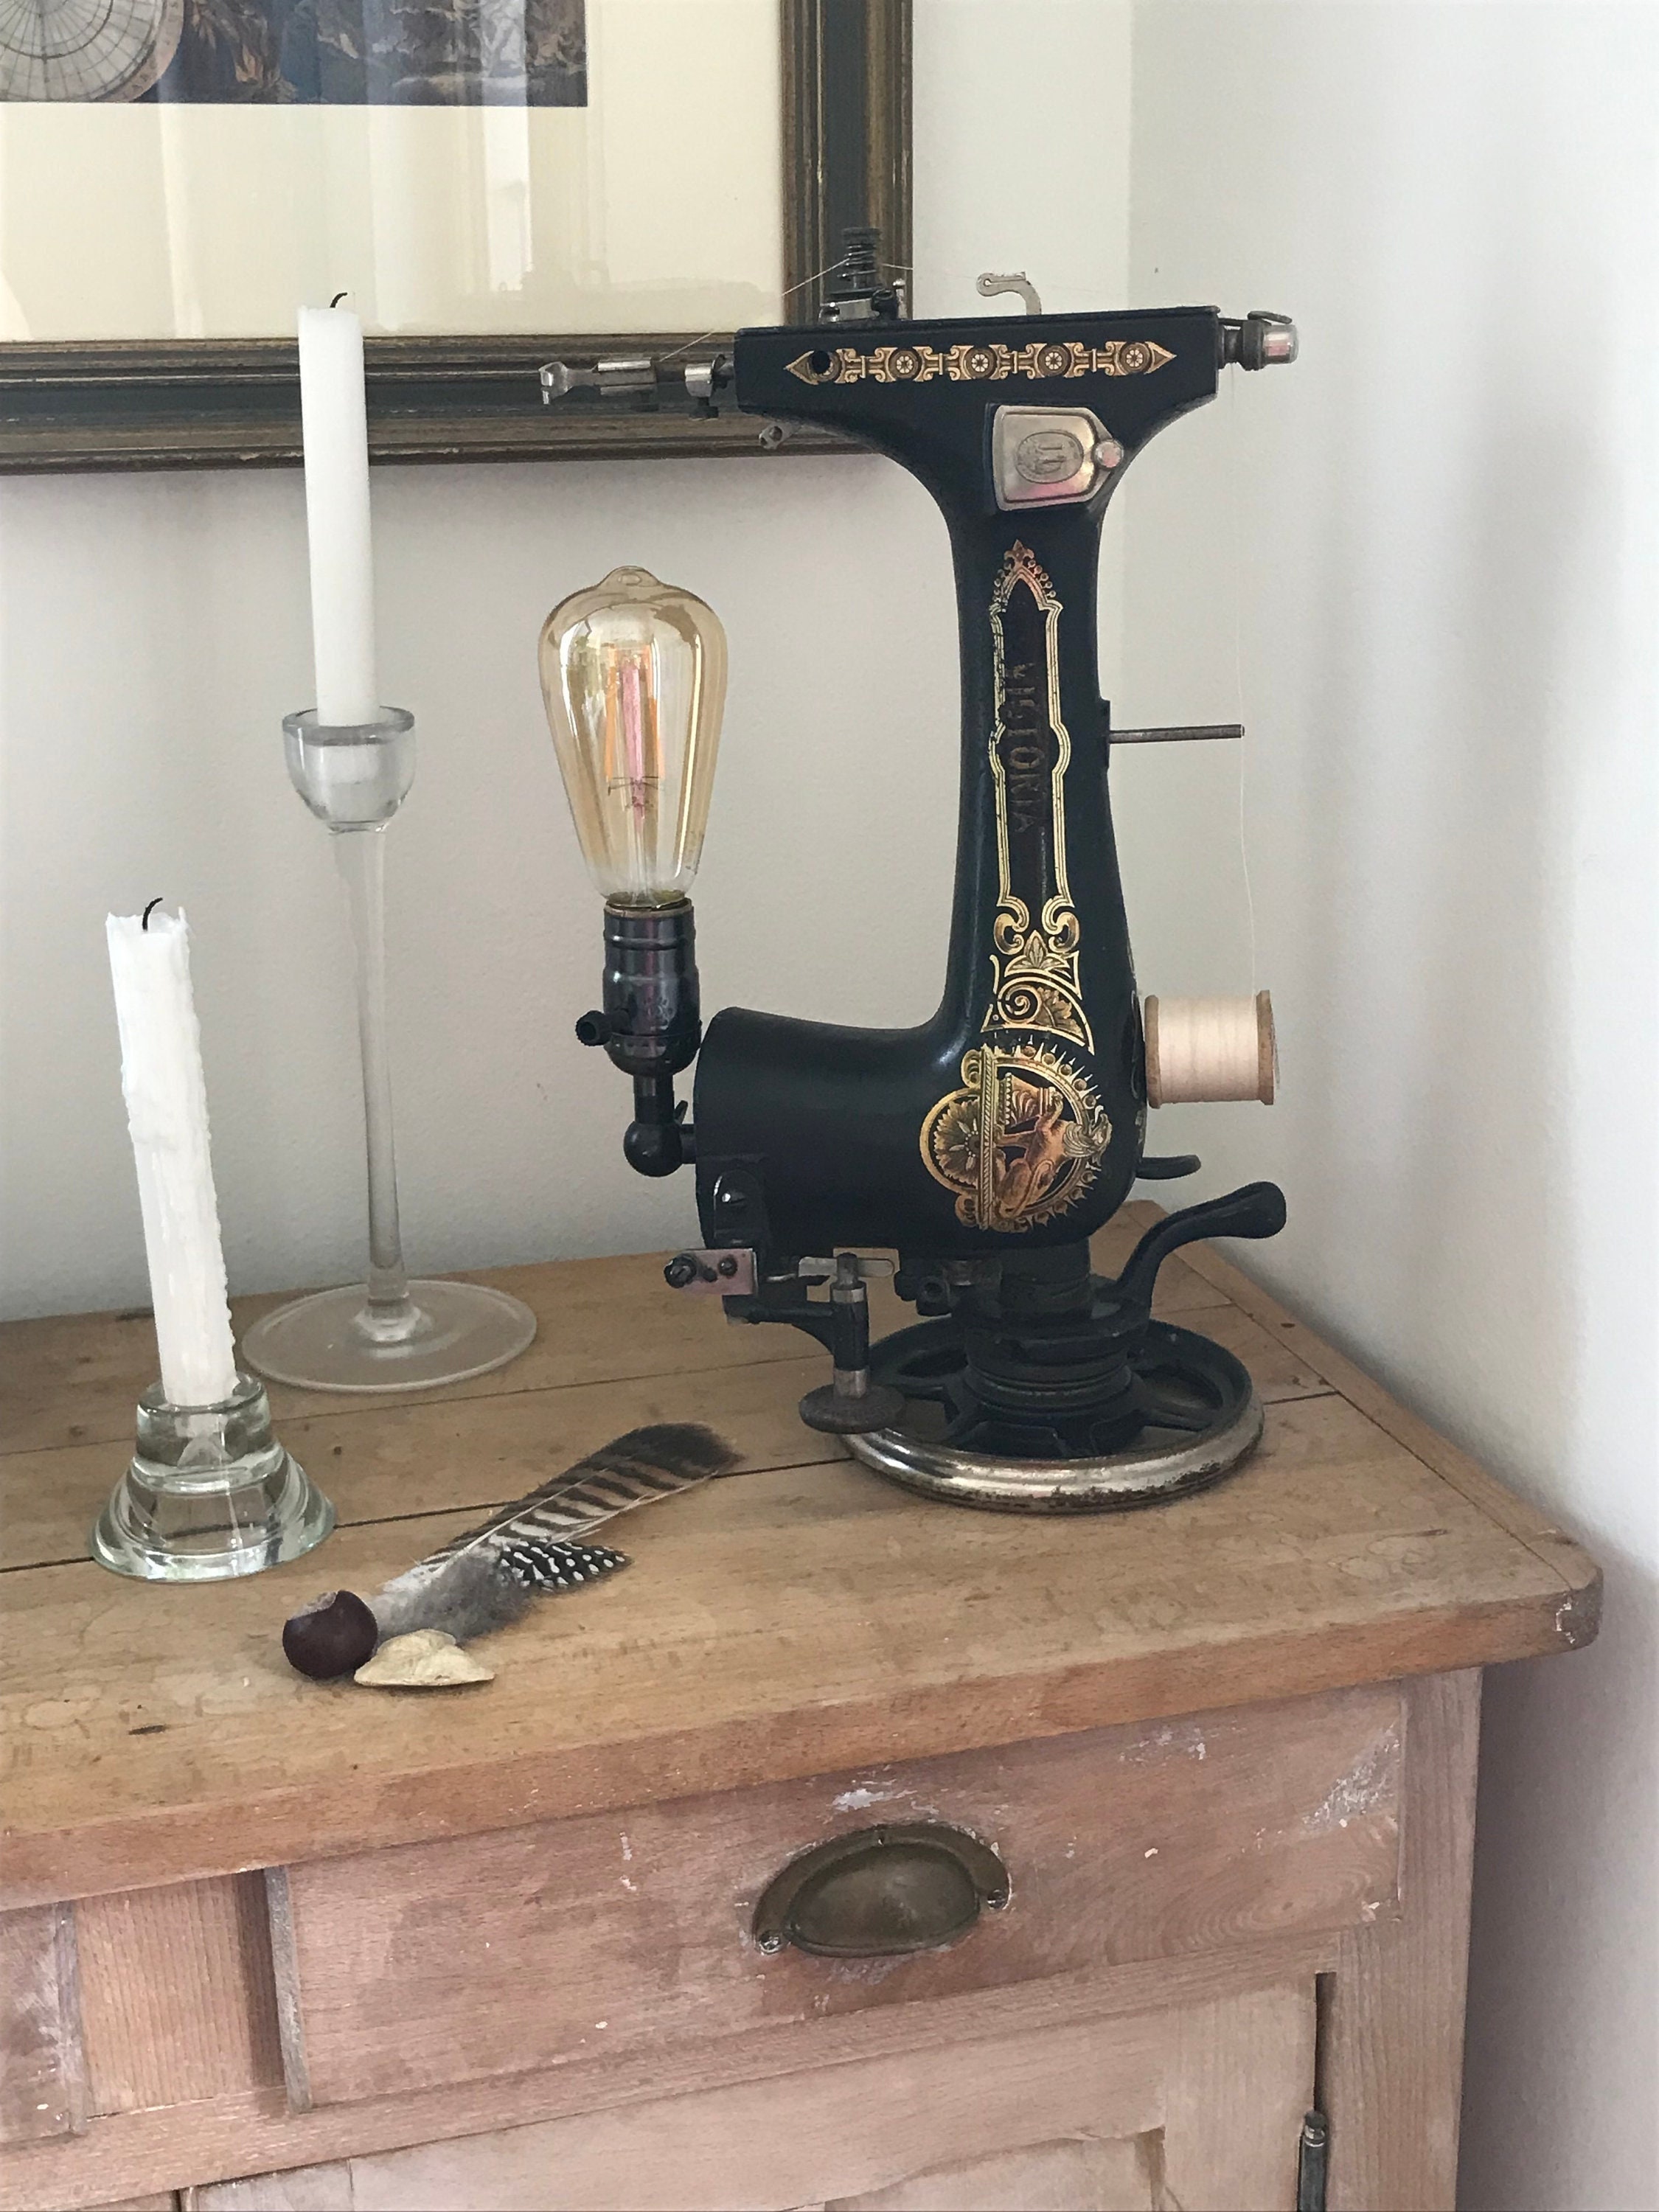 machine à coudre ancienne, rétro, vintage et lampe à pétrole sur